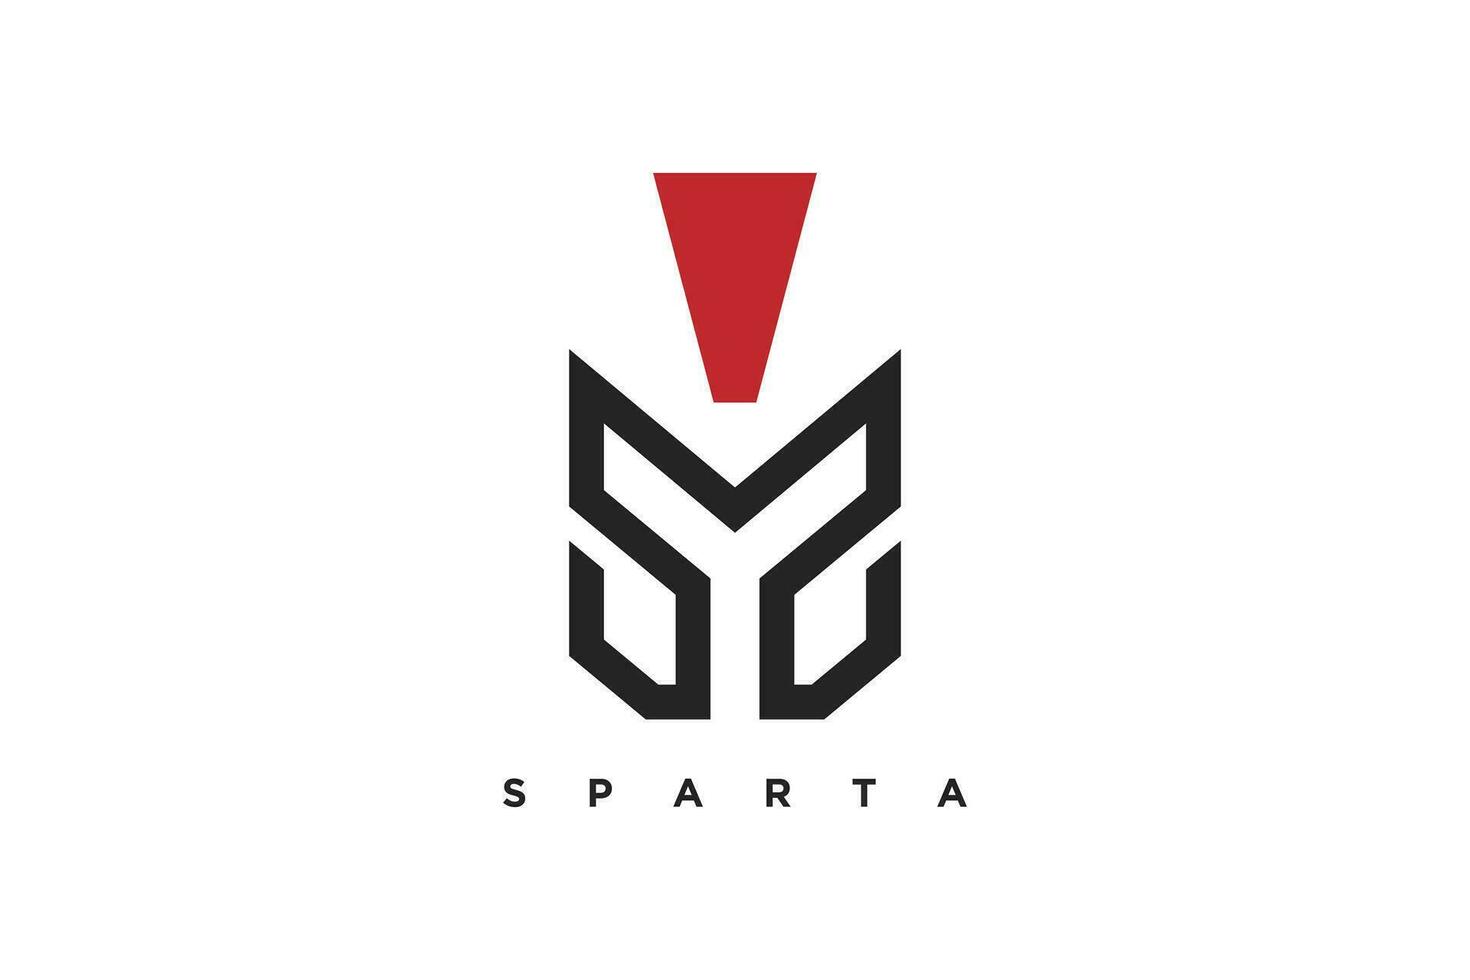 Spartan logo vector with creative unique design